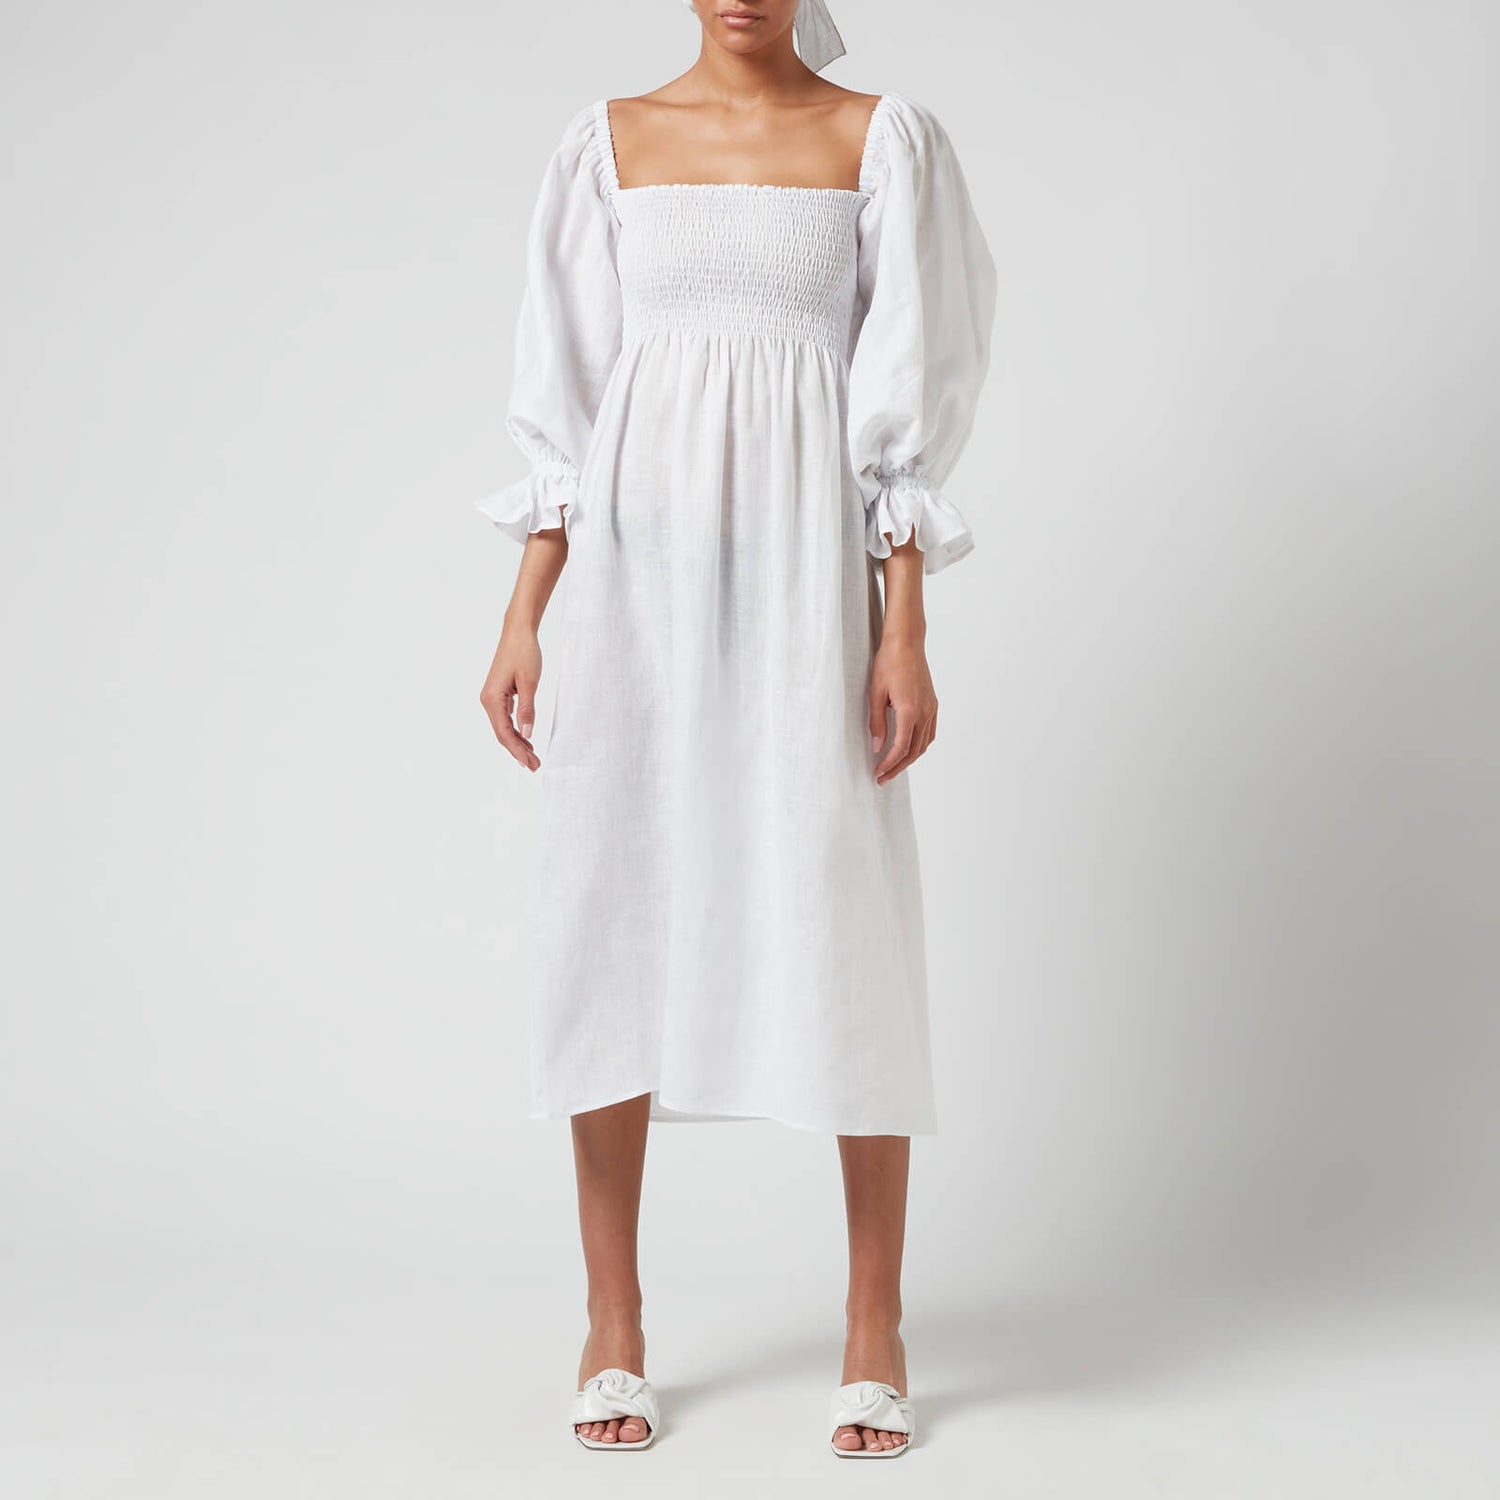 Sleeper Women's Atlanta Linen Dress - White - S